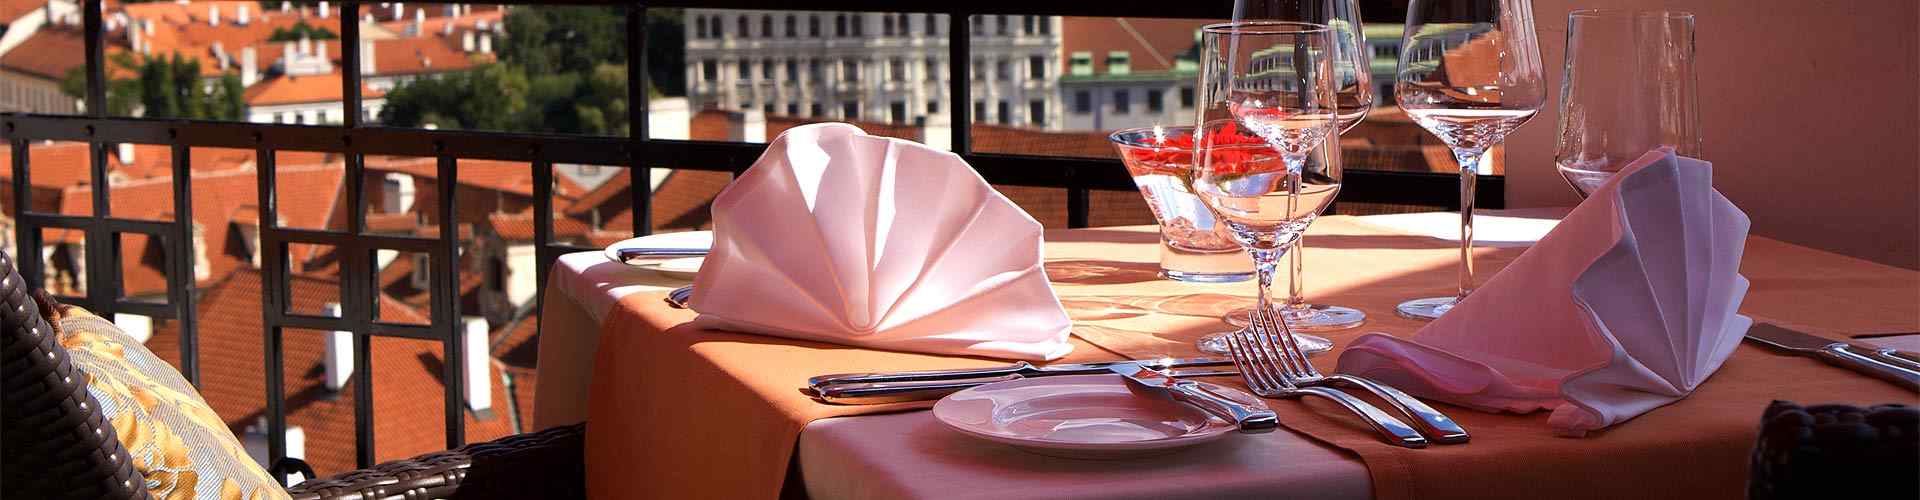 Restaurantes románticos con terraza en Filgueiras
          
          
